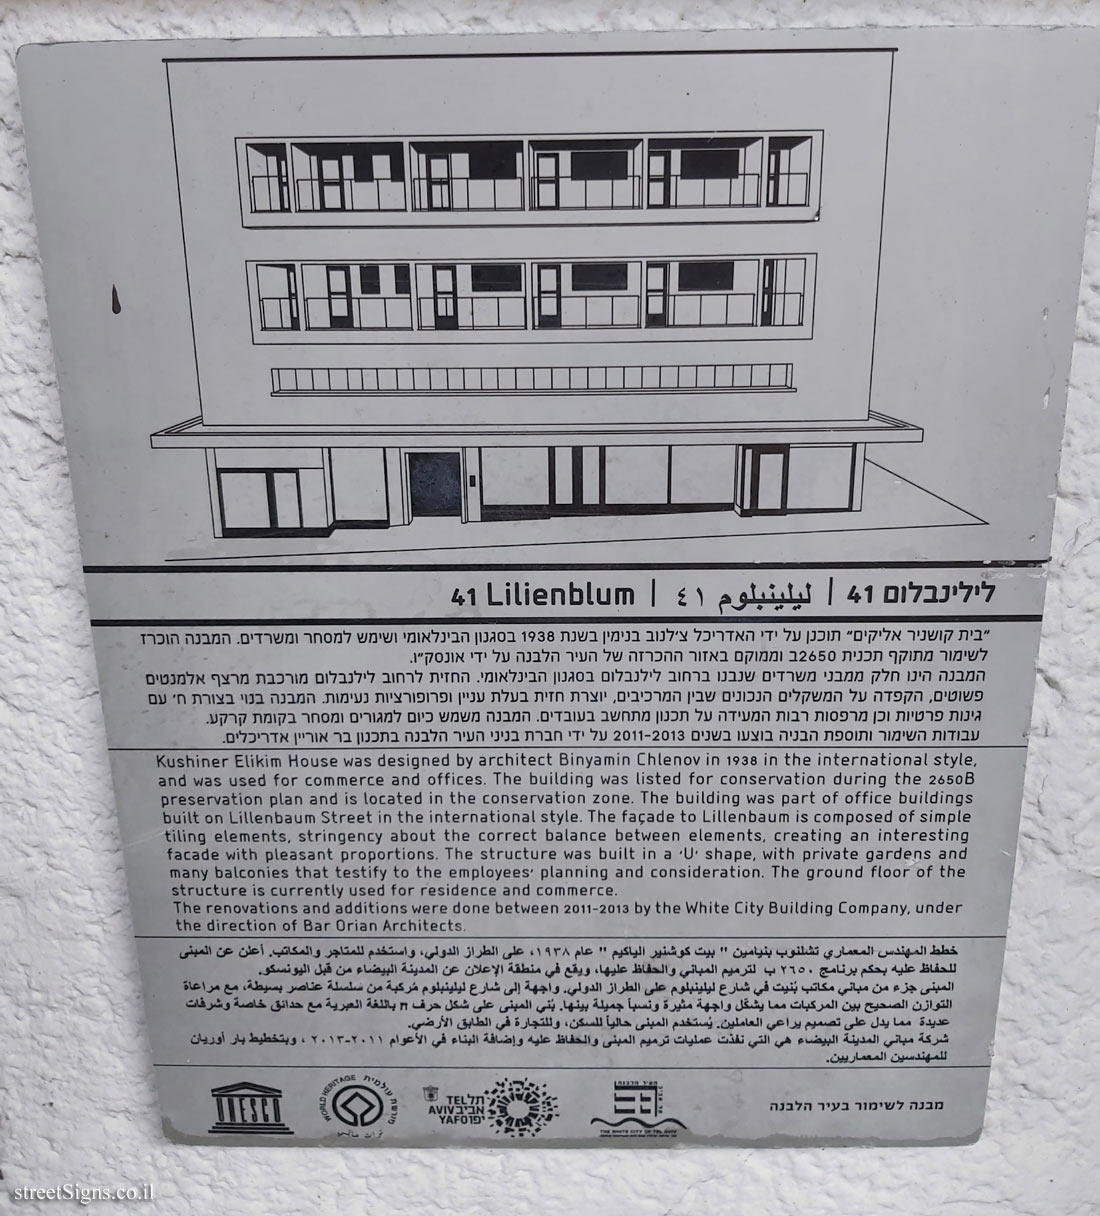 Tel Aviv - buildings for conservation - 41 Lilienblum